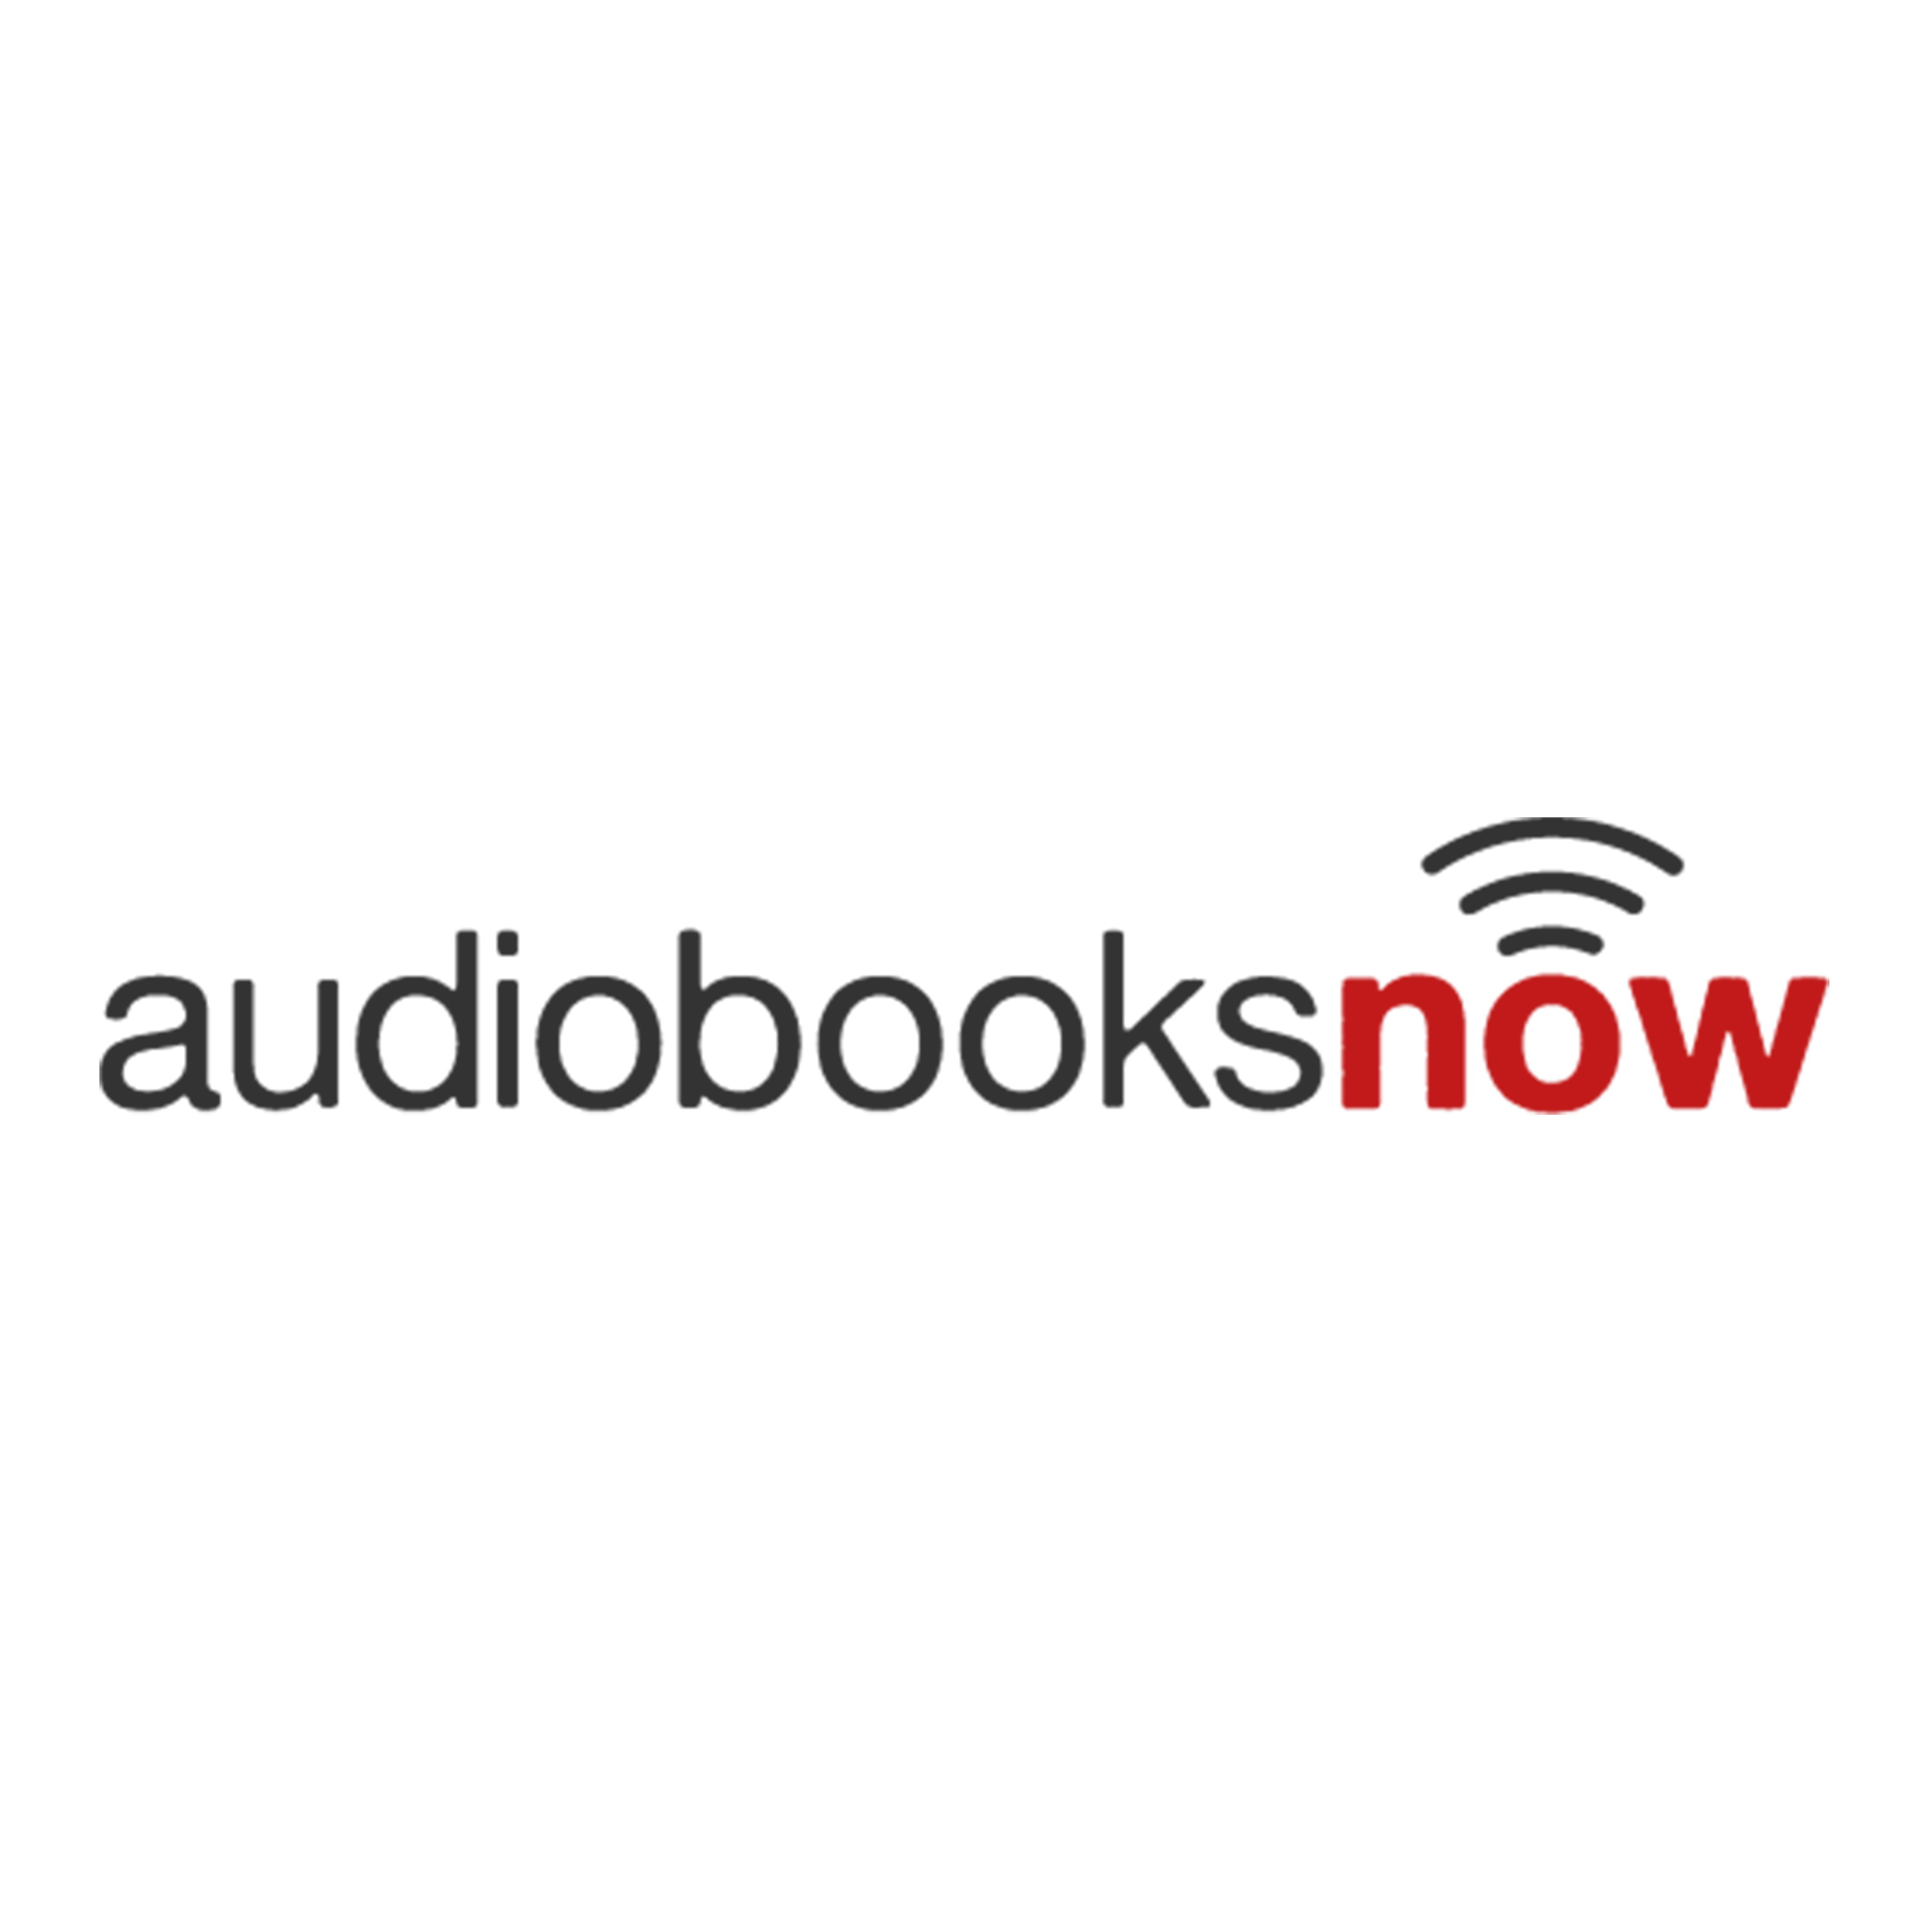 AudiobooksNow logo